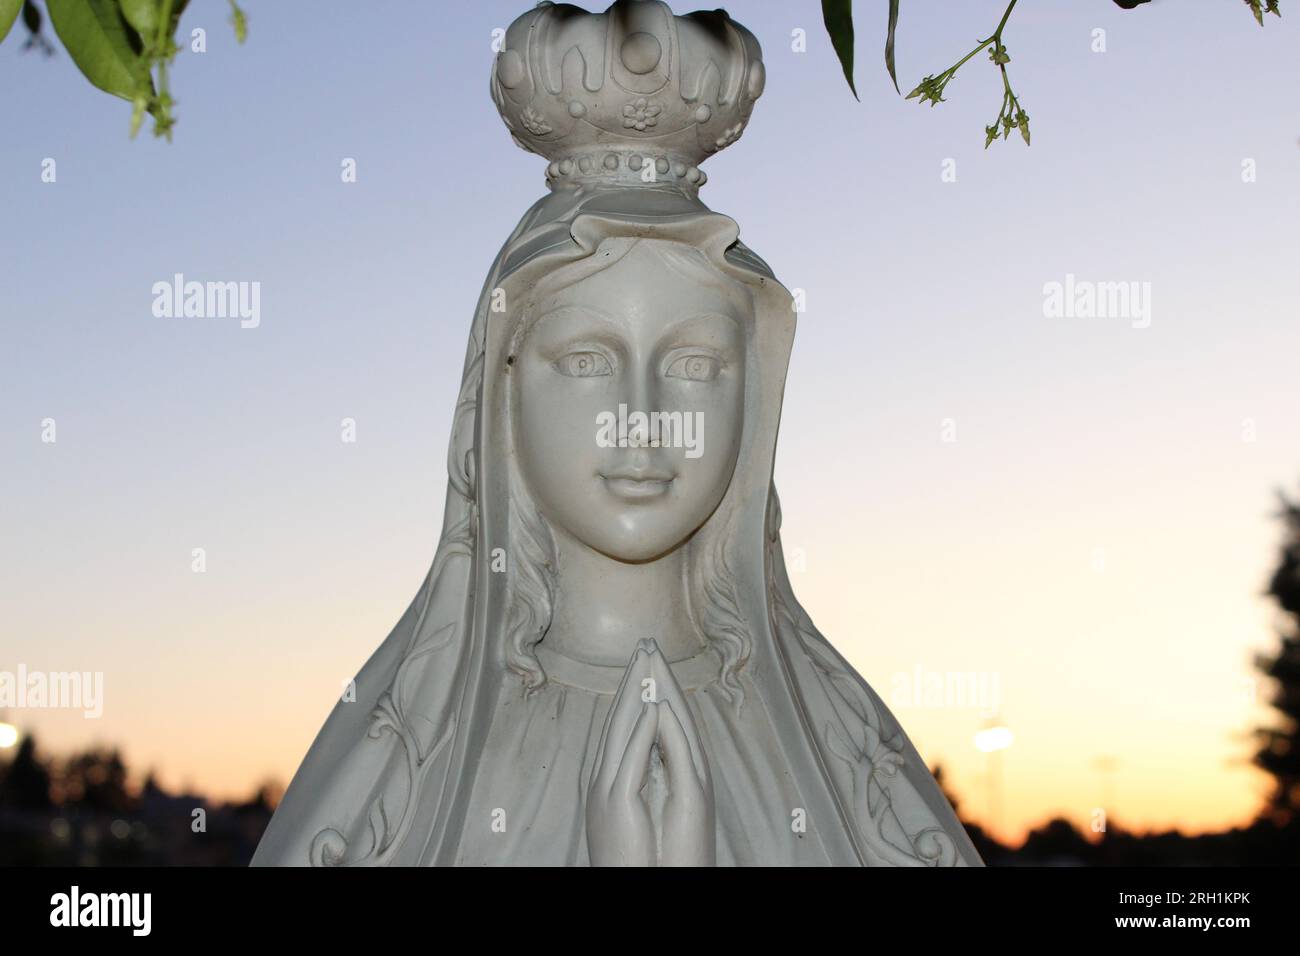 "Divina Serenità - Un'accattivante statua in marmo di una donna in preghiera, che evoca un profondo senso di pace e di contemplazione spirituale." Foto Stock